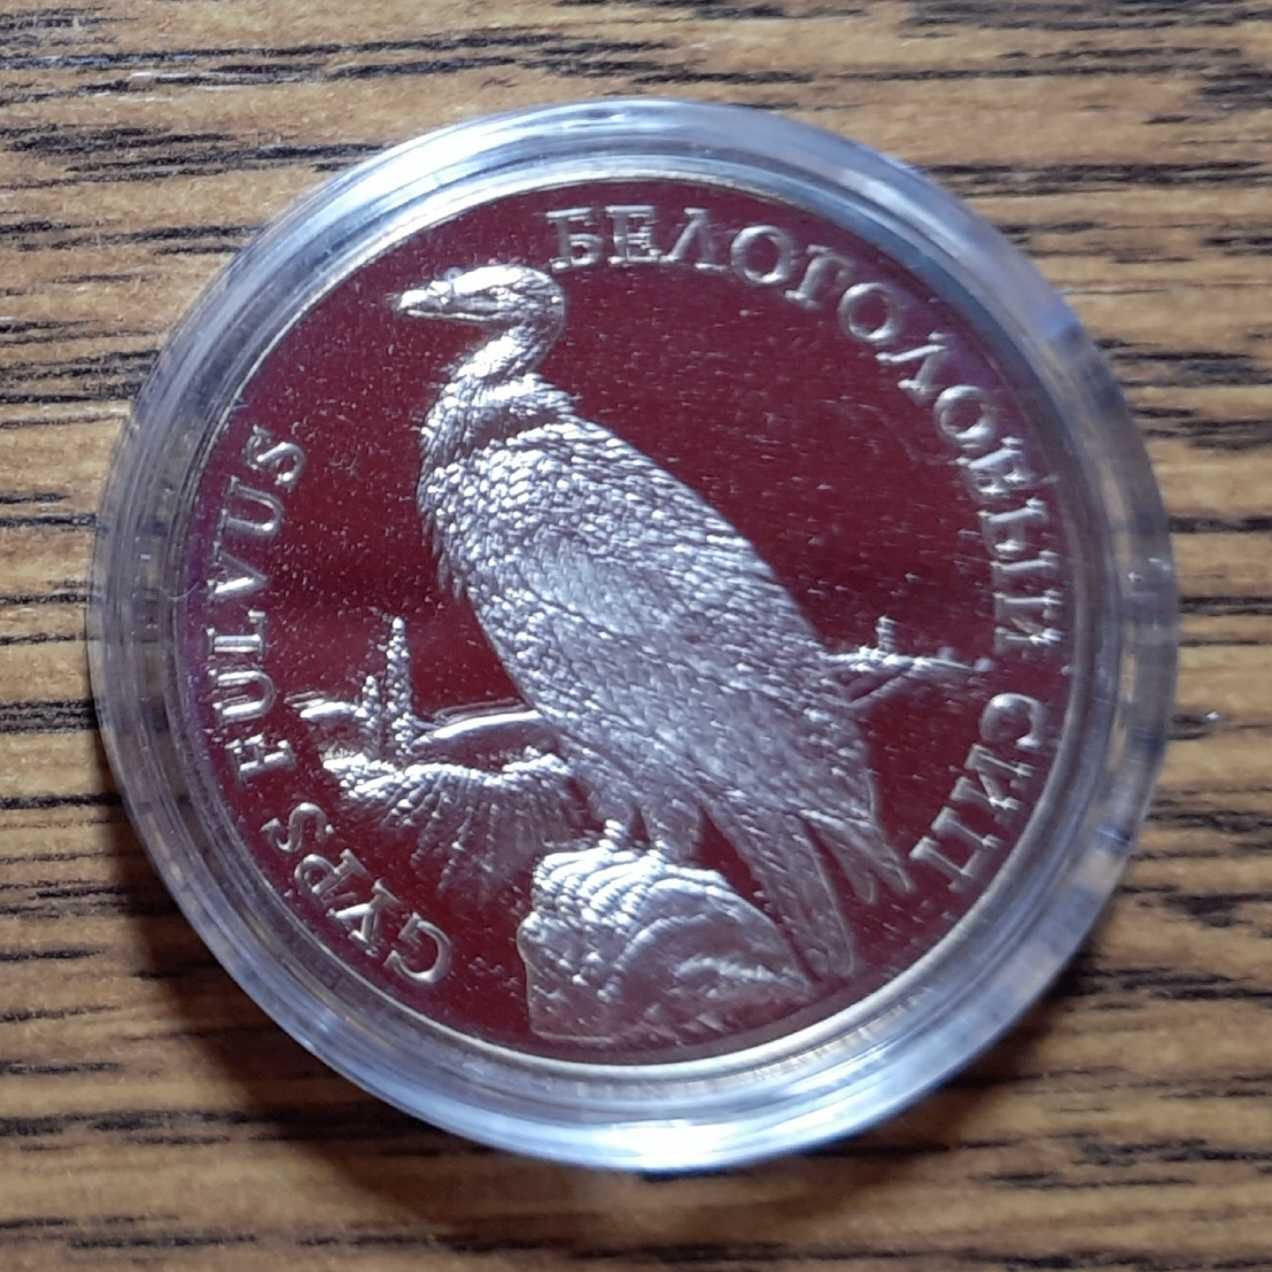 2 srebrne monety z Naddniestrza - 100 rubli - Sęp i motyl